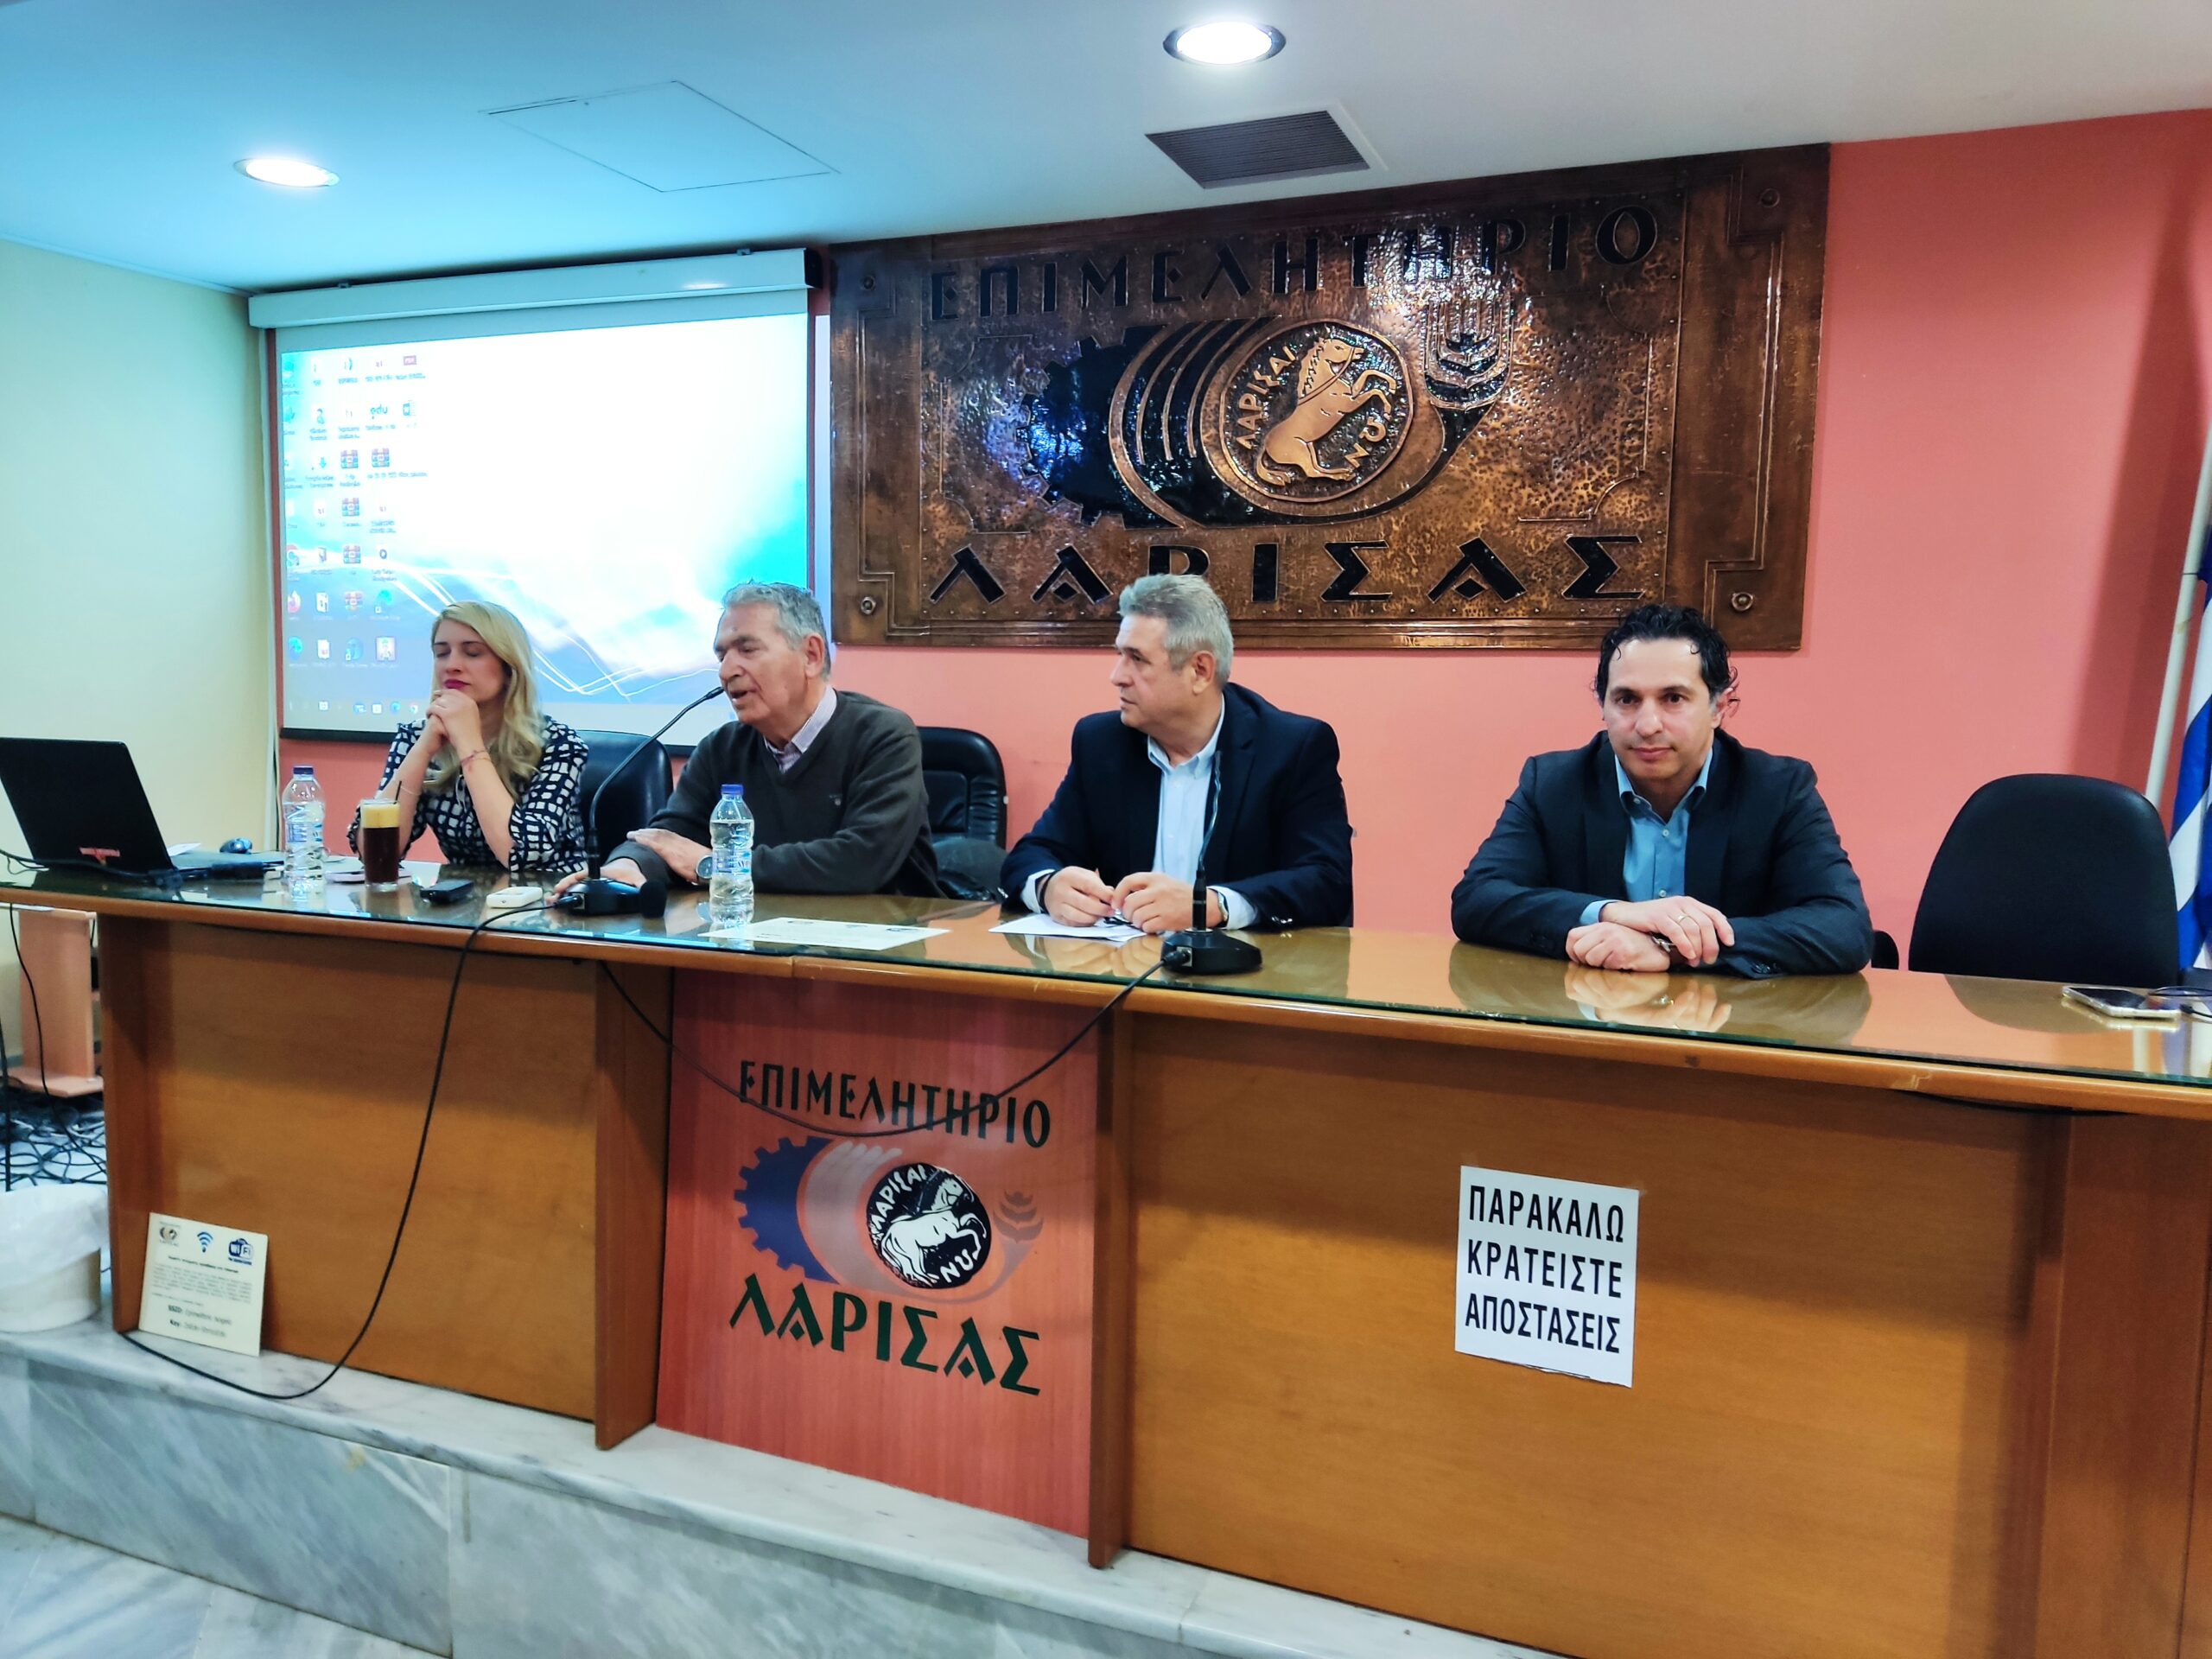 Μεγάλη συμμετοχή στο σεμινάριο του ΟΕΕ Θεσσαλίας για τον εξωδικαστικό μηχανισμό ρύθμισης οφειλών